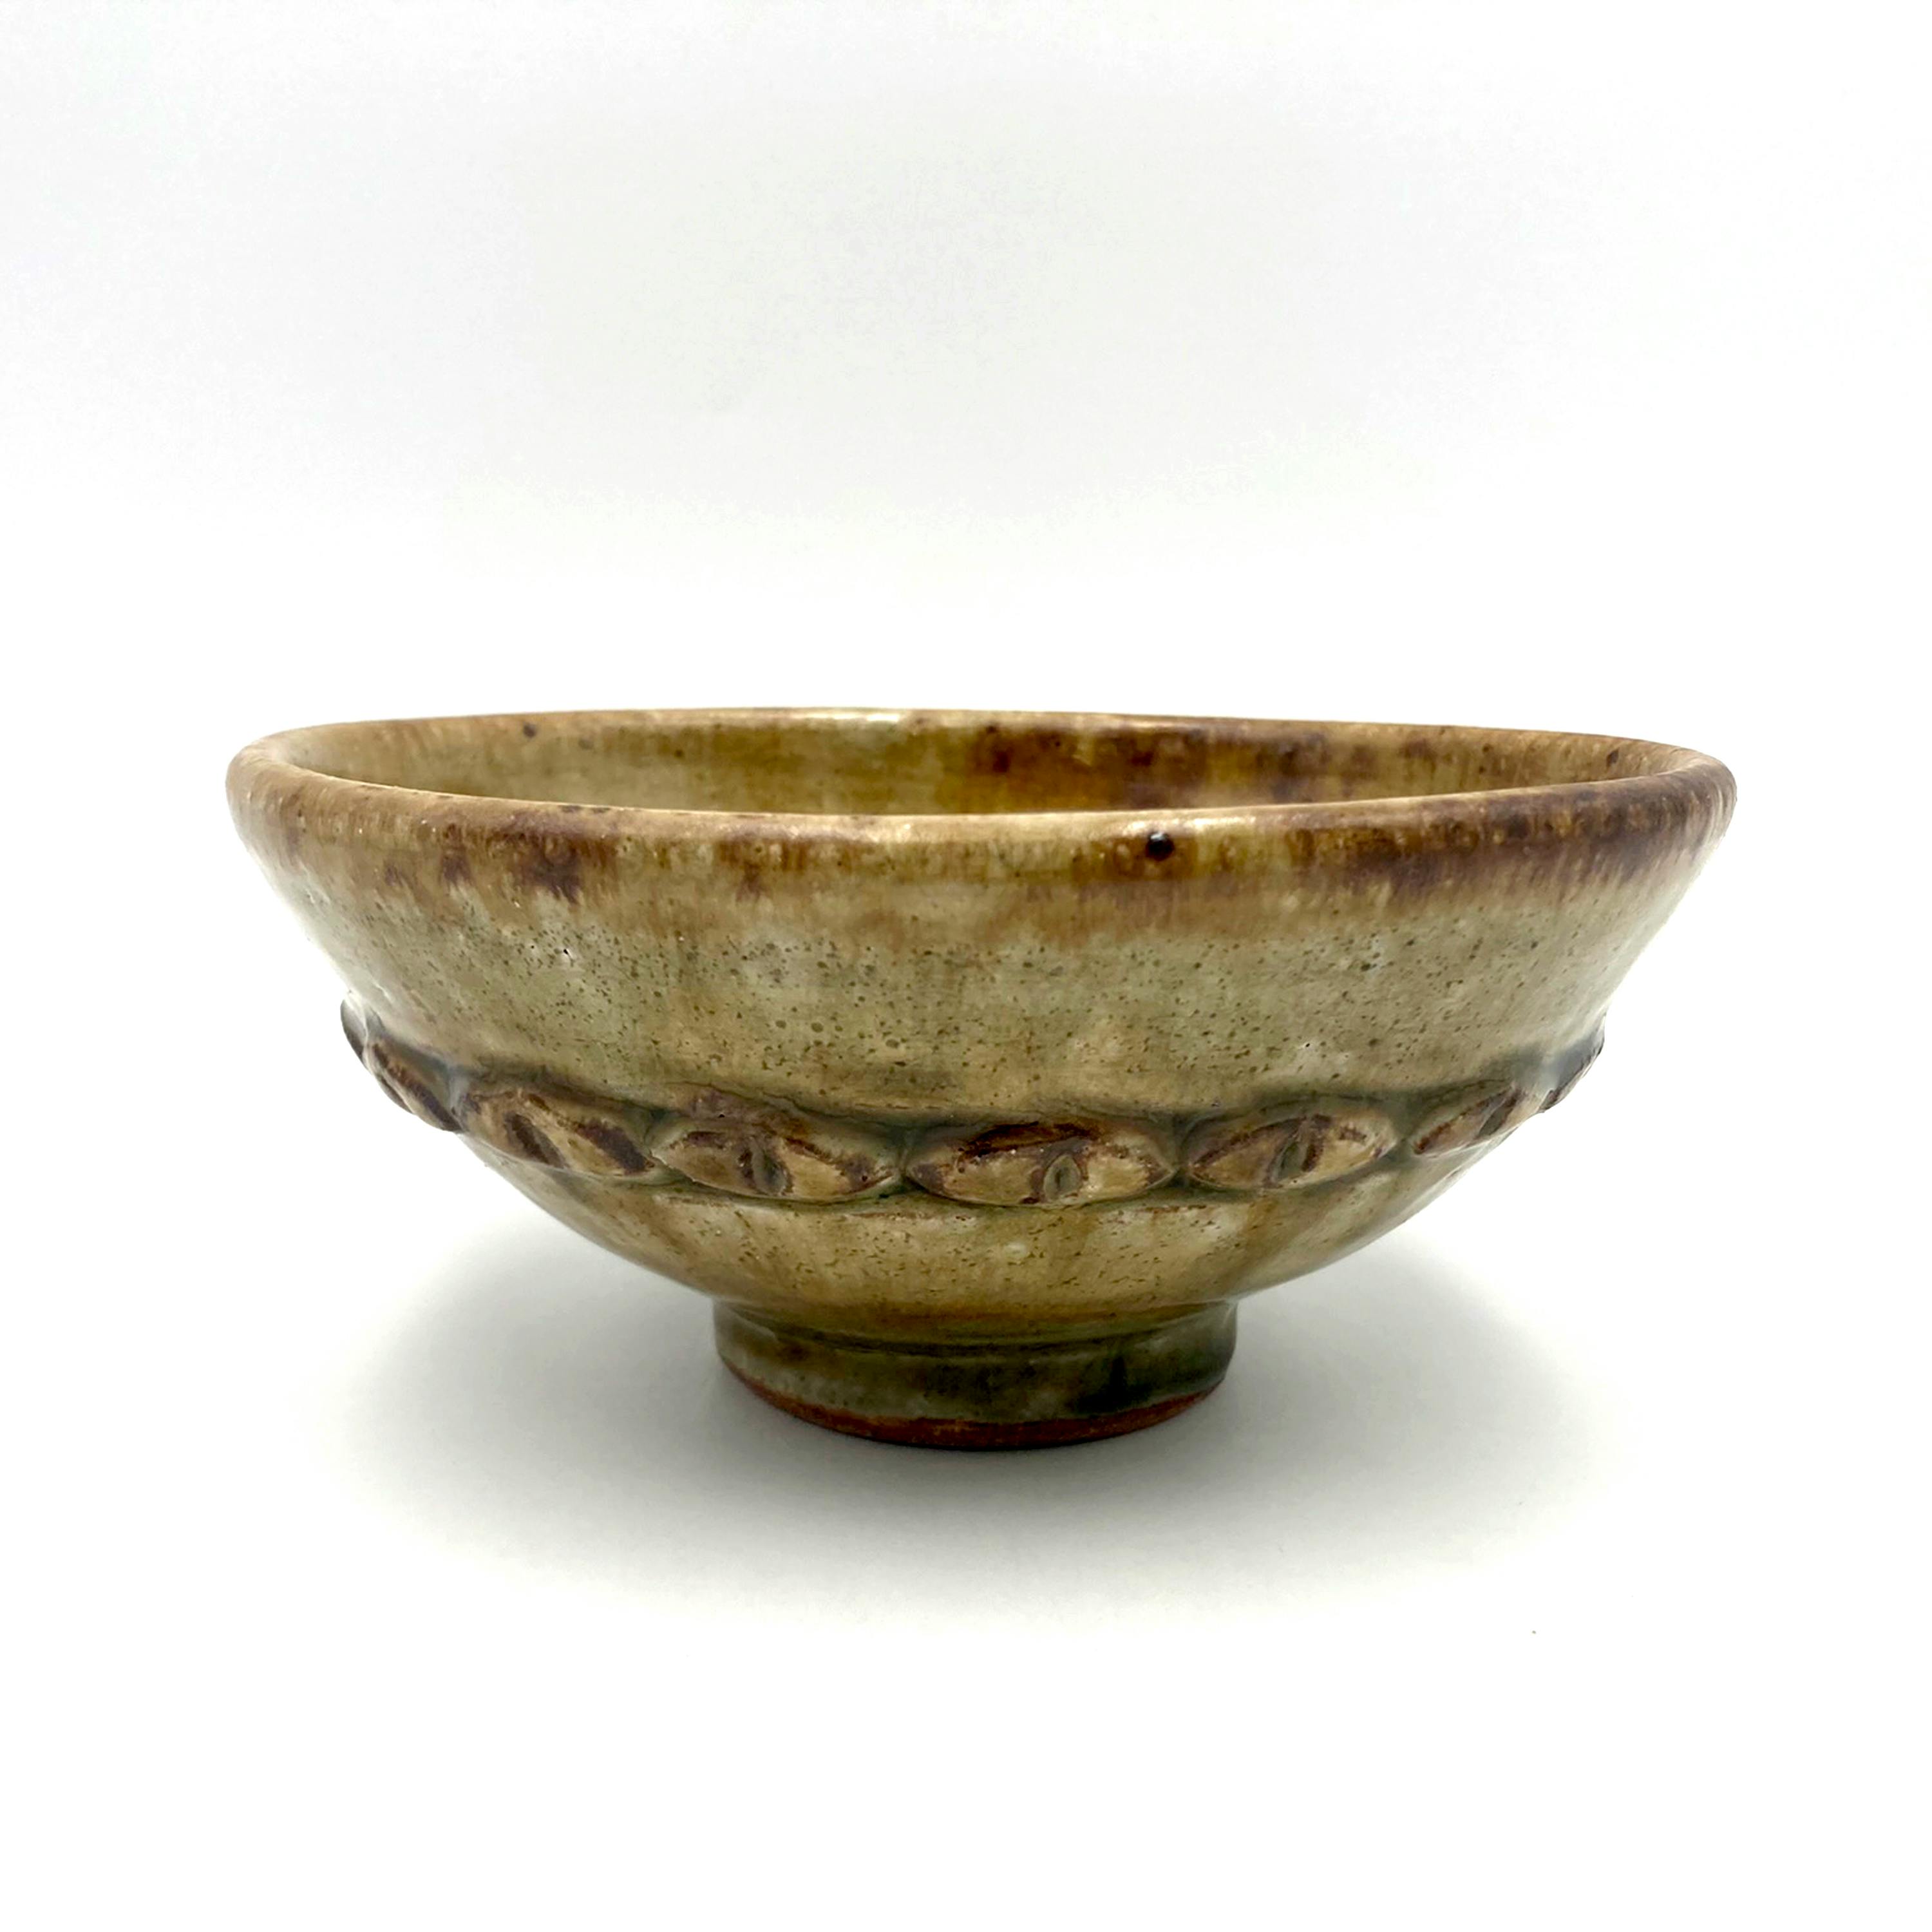 Ceramic bowl by Alana Cuellar